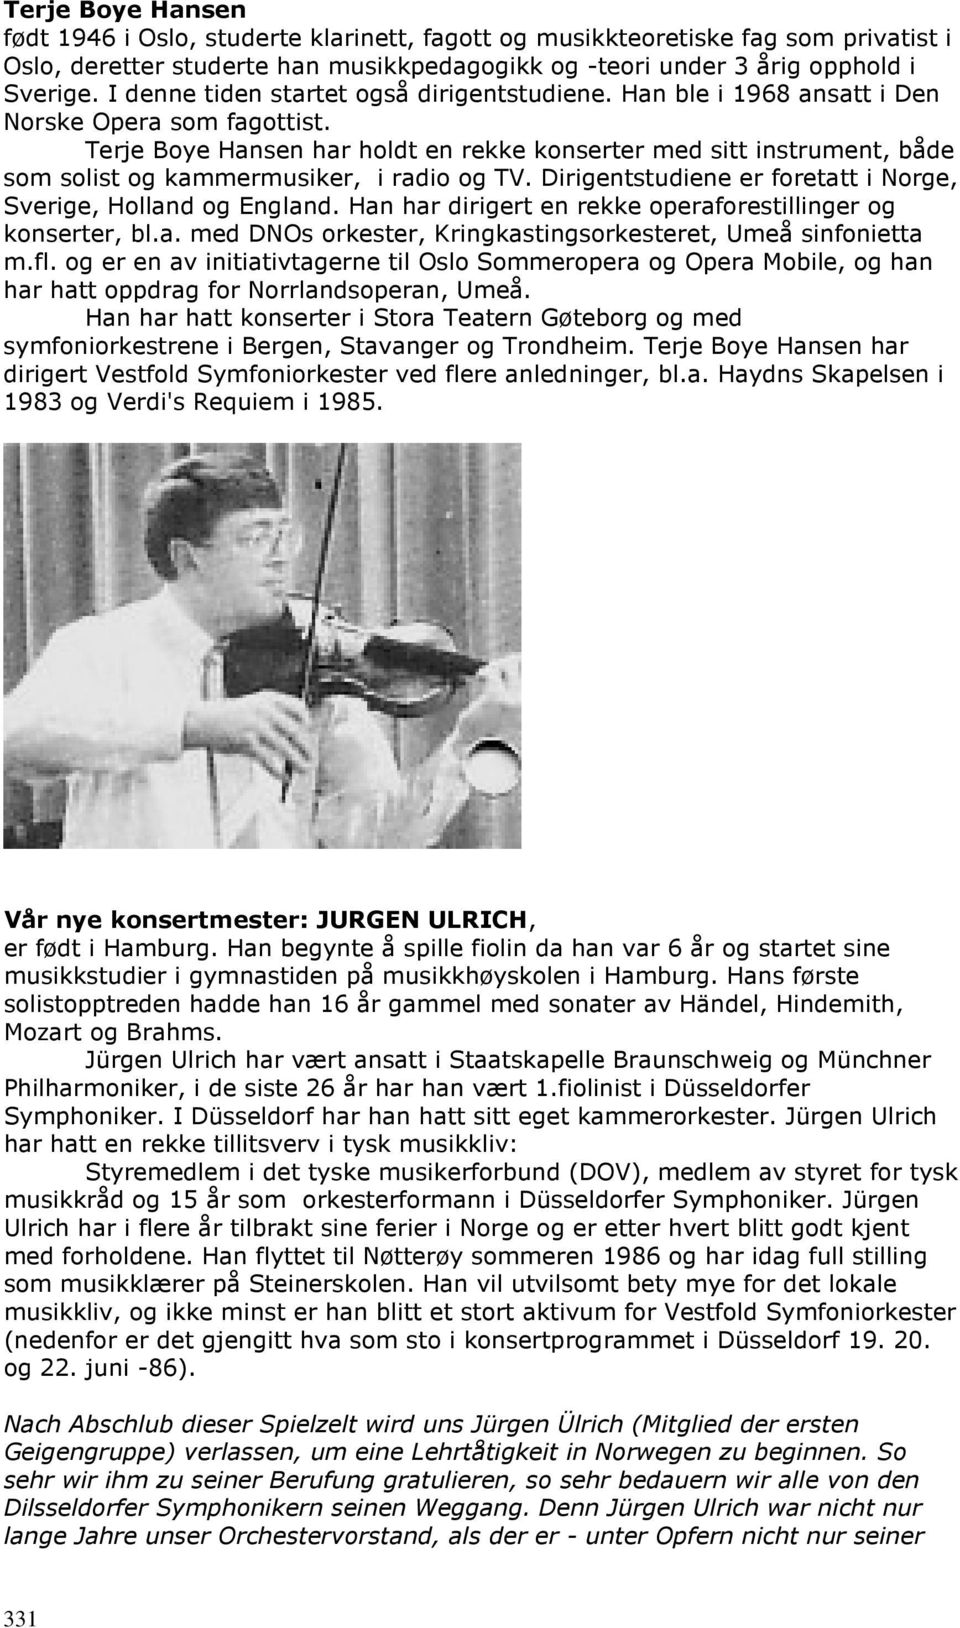 Terje Boye Hansen har holdt en rekke konserter med sitt instrument, både som solist og kammermusiker, i radio og TV. Dirigentstudiene er foretatt i Norge, Sverige, Holland og England.